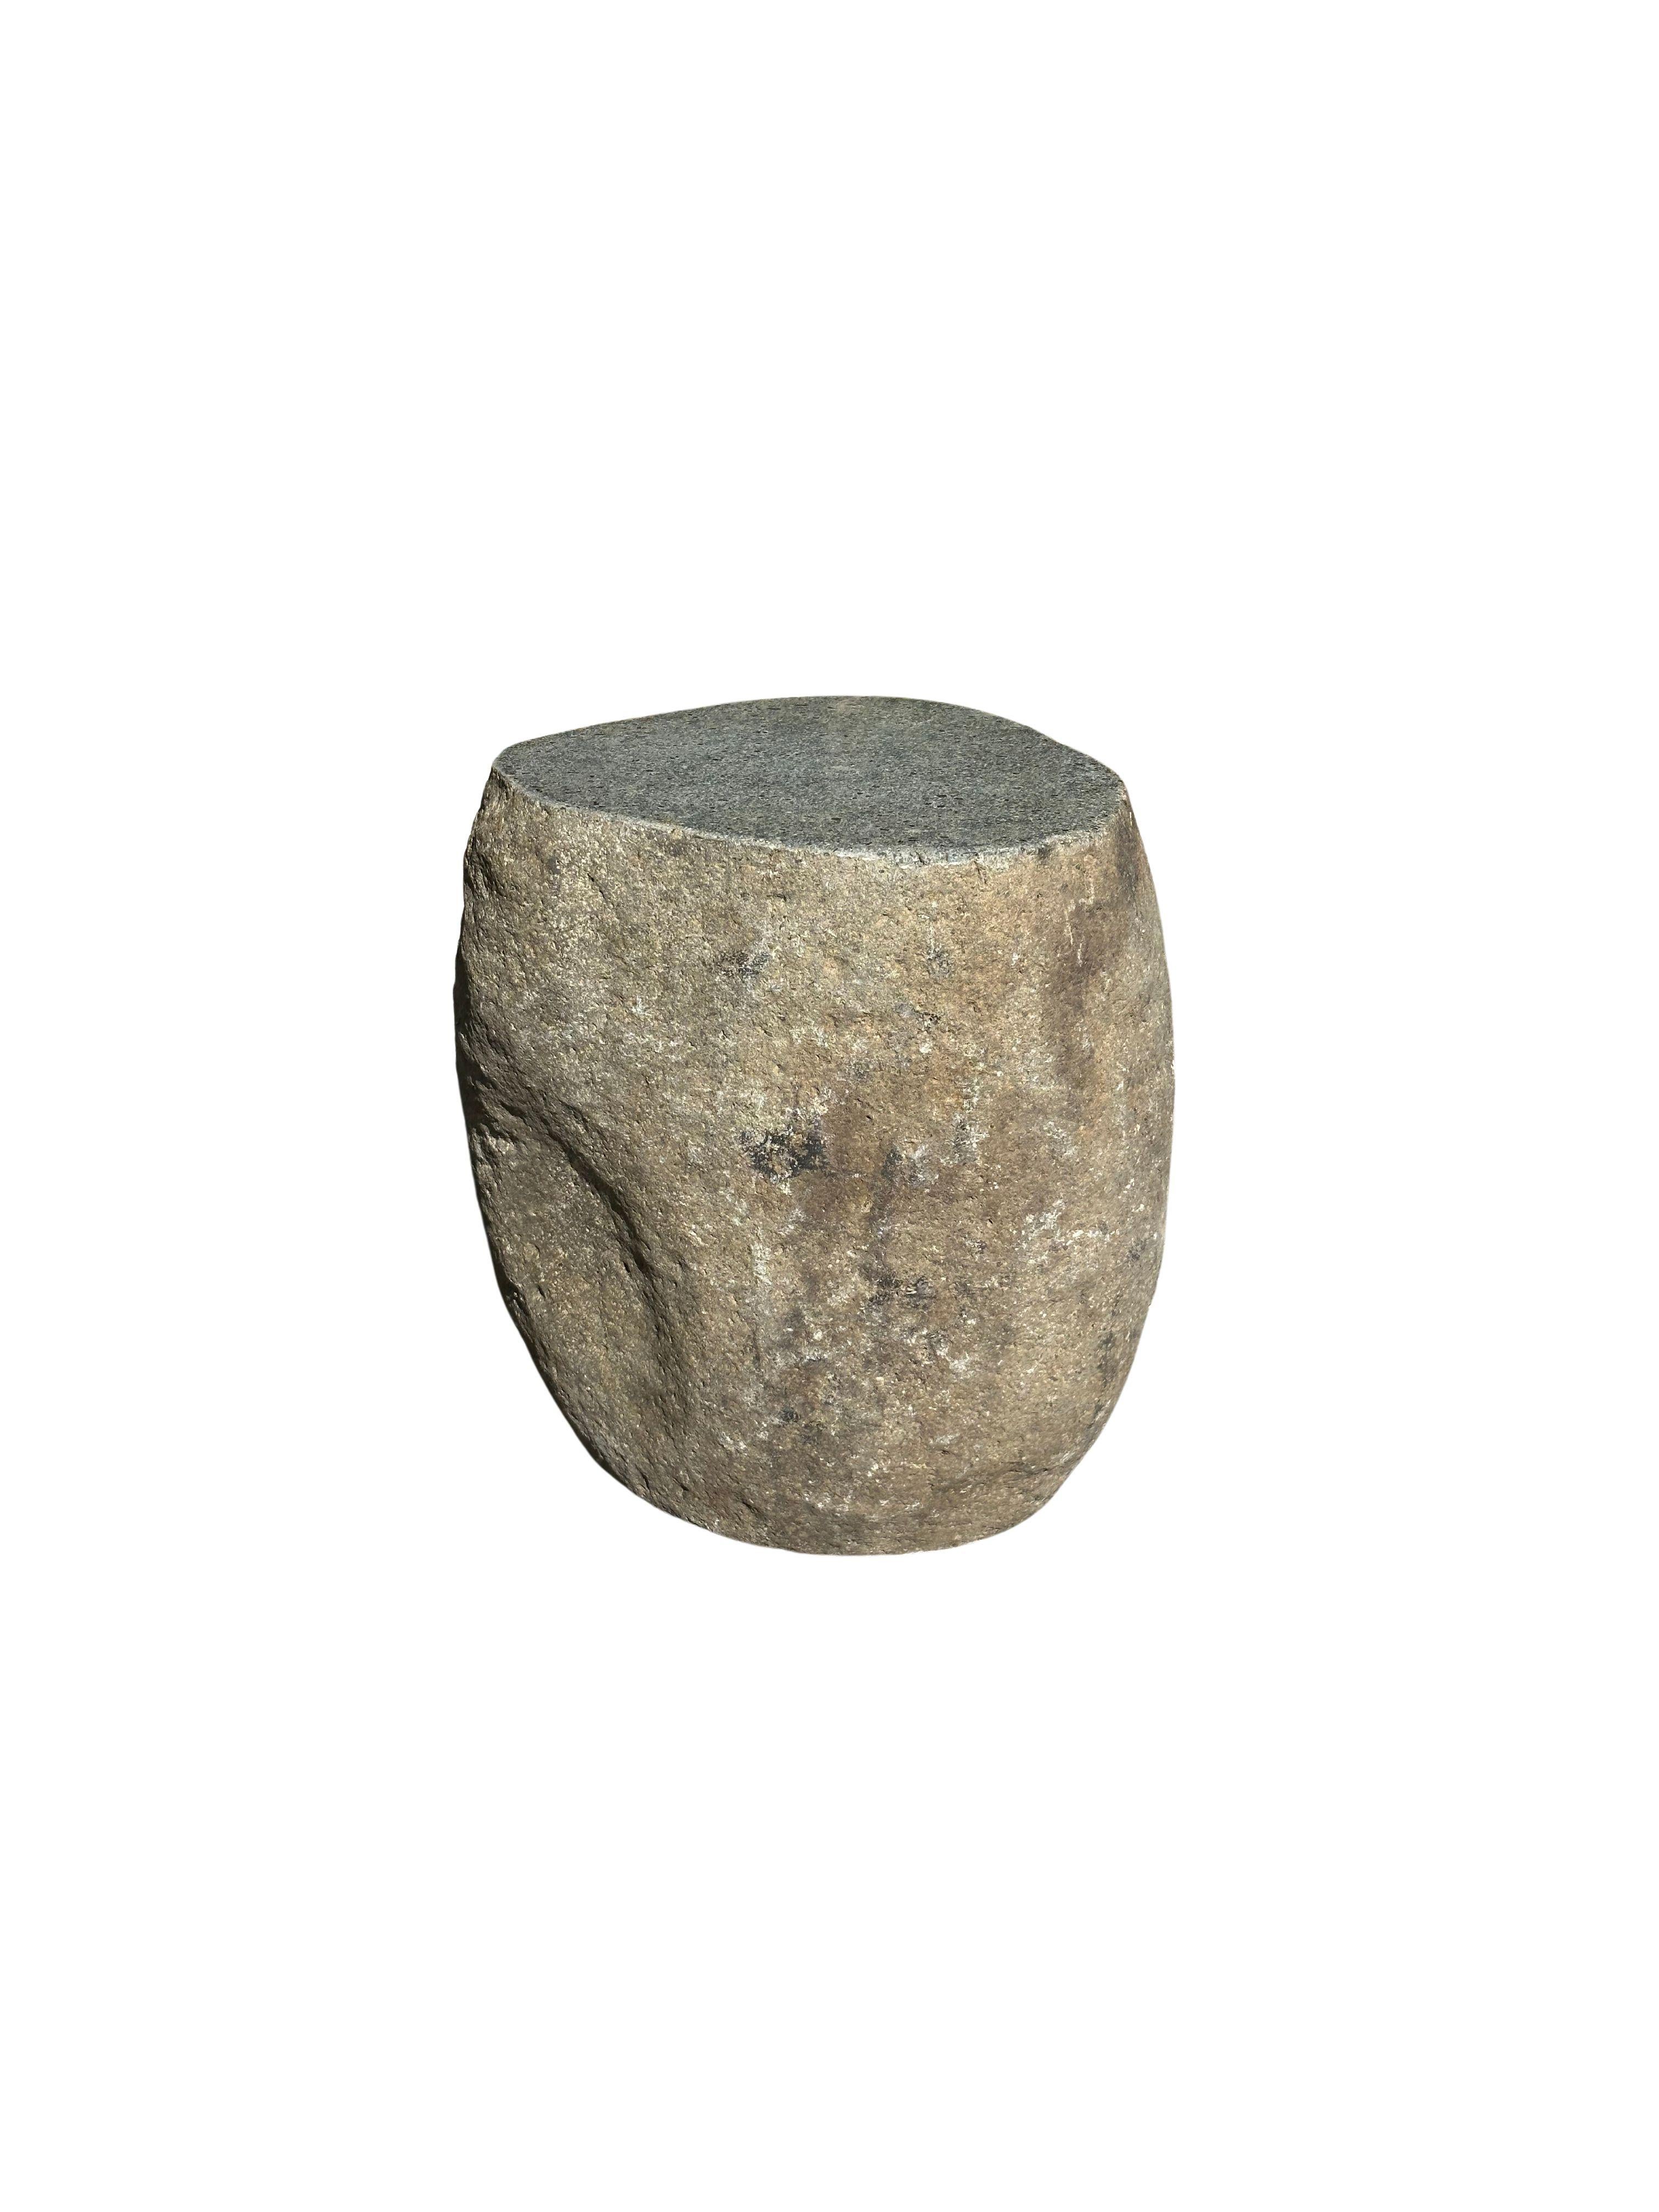 Ein unglaublich schwerer und massiver Beistelltisch / Sockel aus abgerundetem Stein. Dieses schöne skulpturale Objekt wurde aus einem massiven Stein gefertigt, der aus einem Flussbett in Ost-Java stammt. Ein rohes und organisches Objekt mit schönen